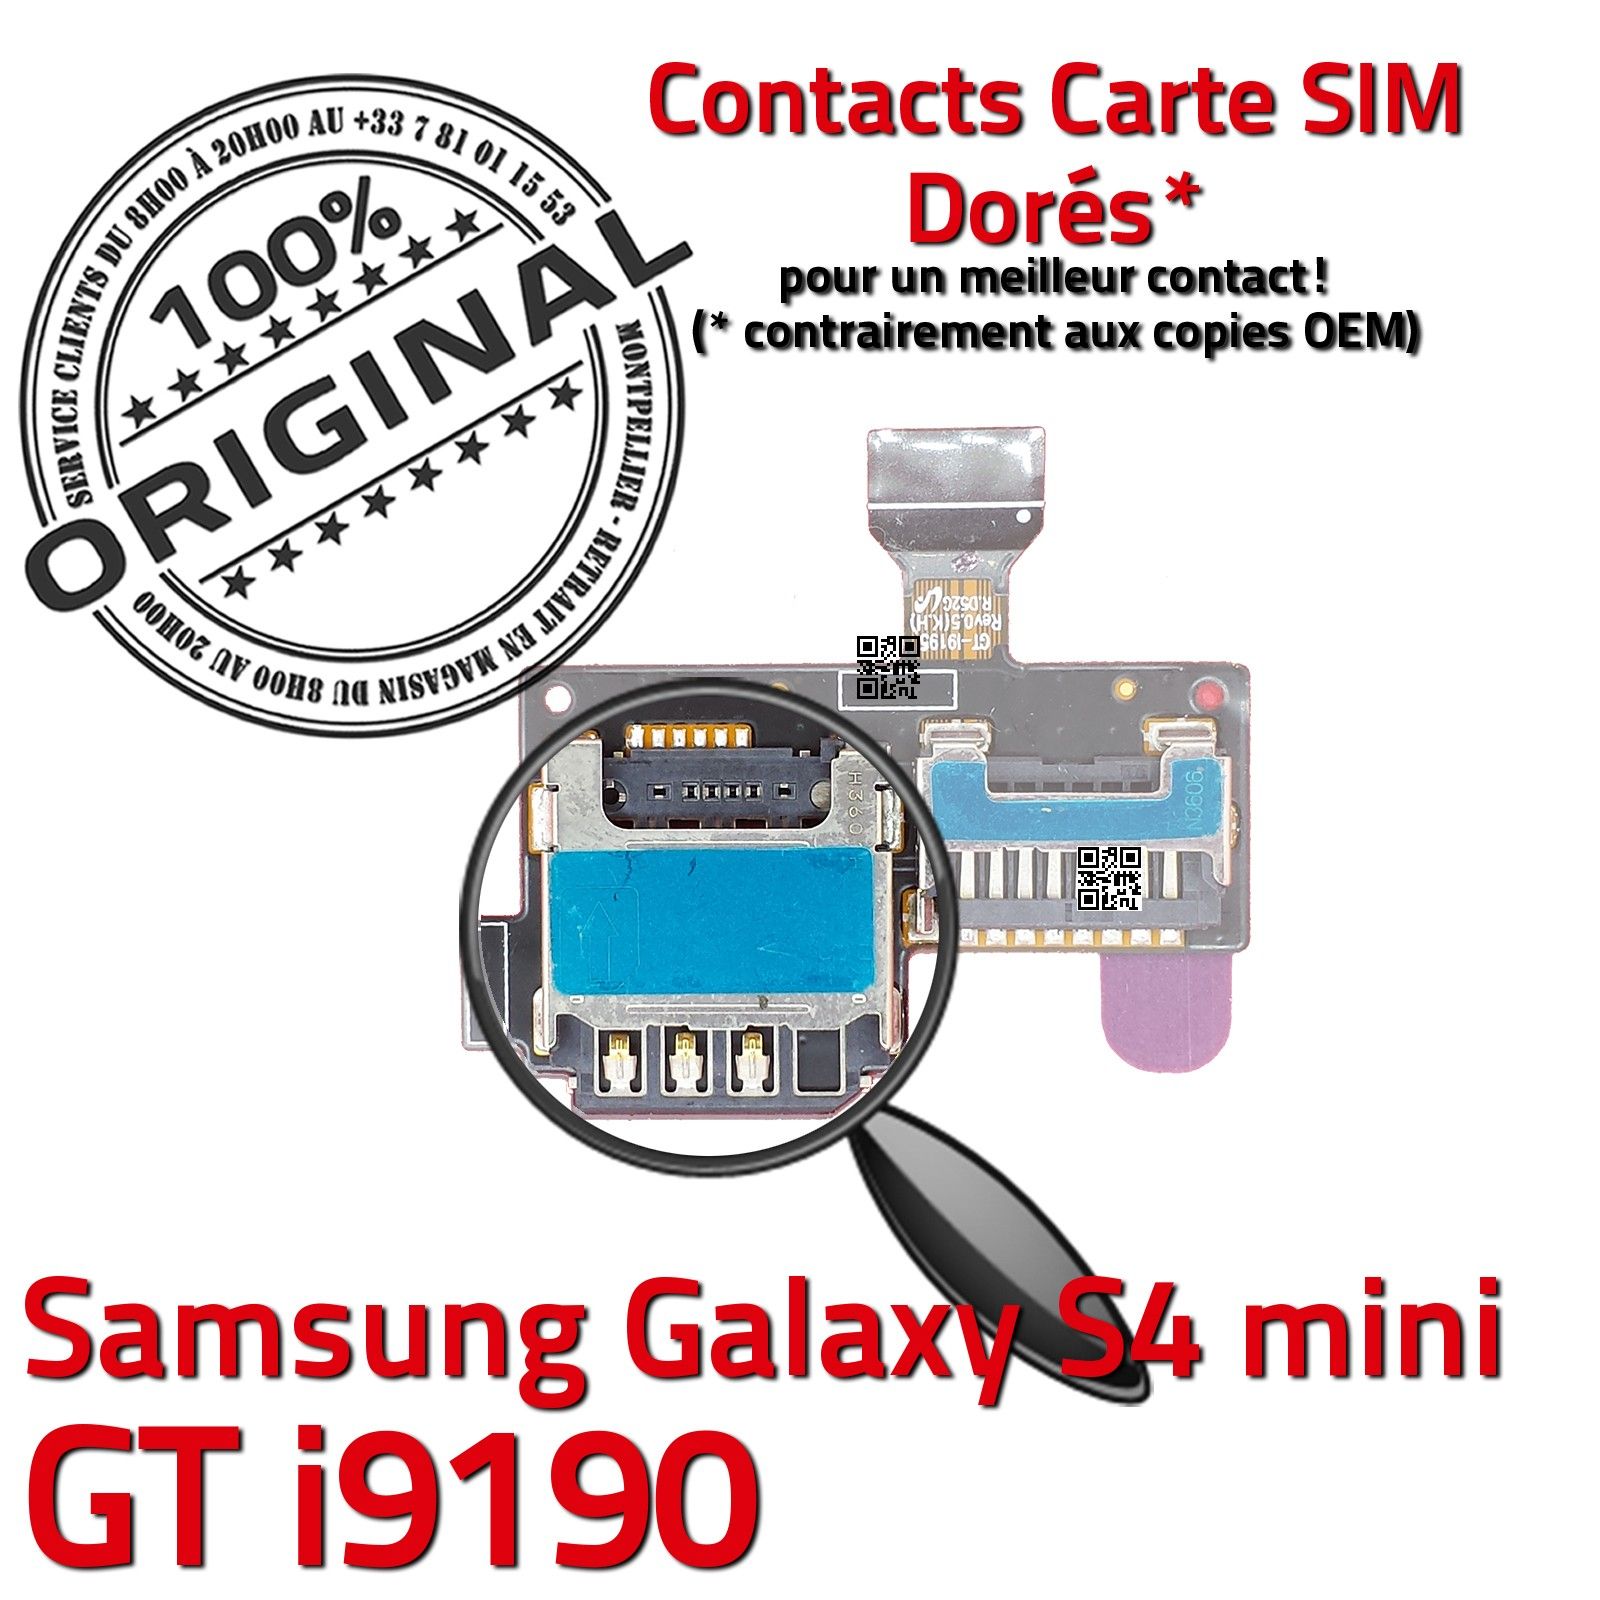 Reparation Lecteur de Carte SIM et Carte SD Galaxy S5 Mini